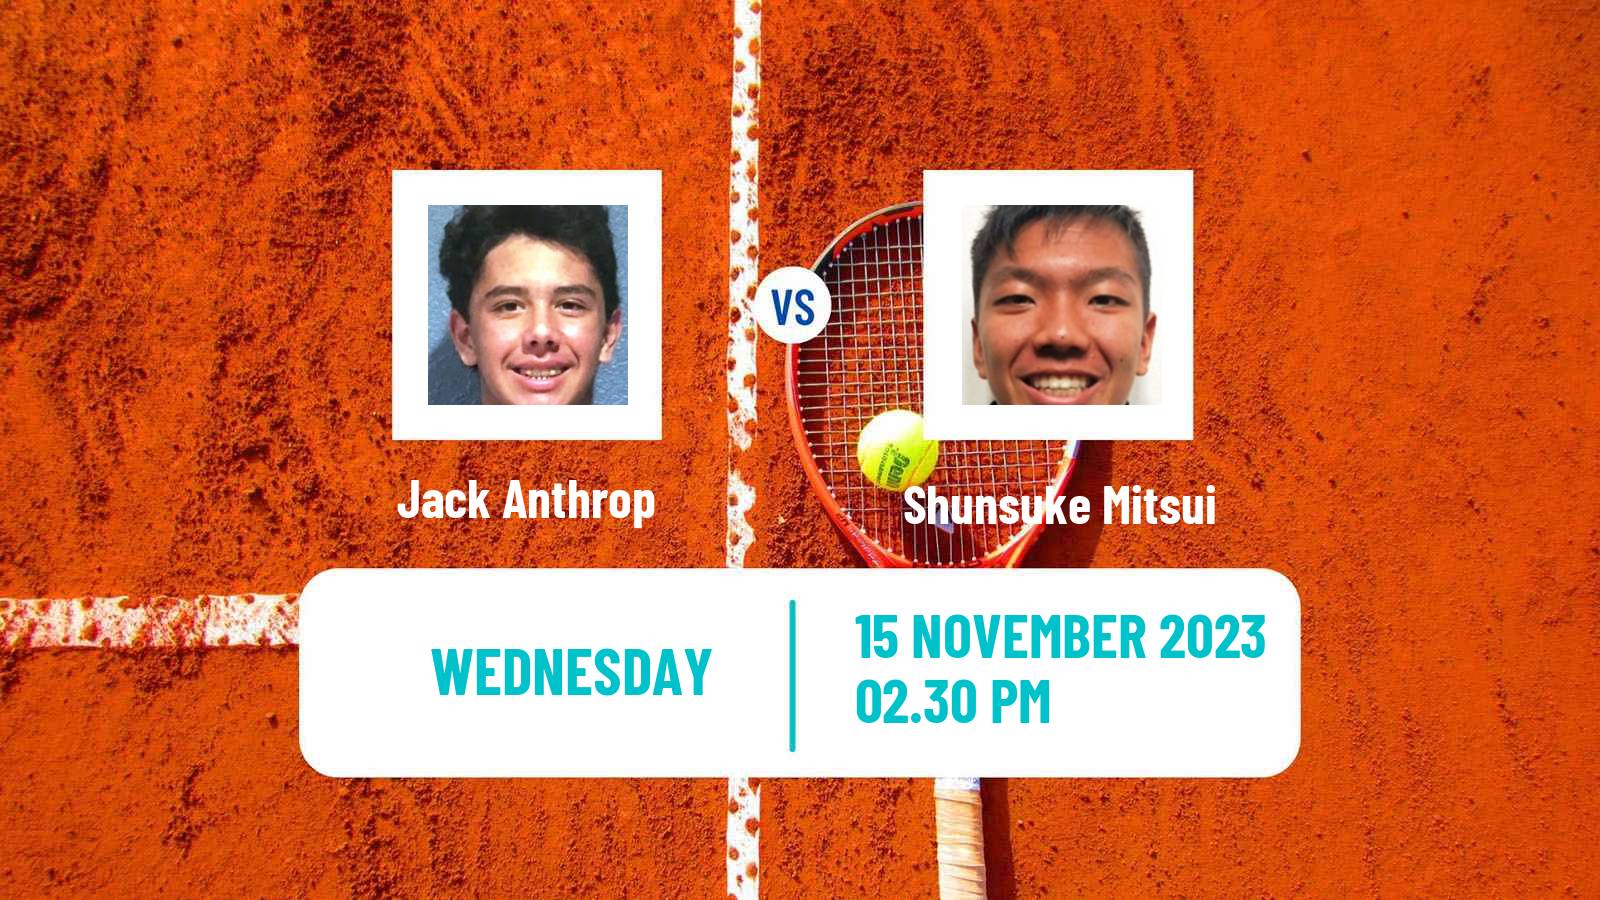 Tennis ITF M25 Columbus Oh Men Jack Anthrop - Shunsuke Mitsui